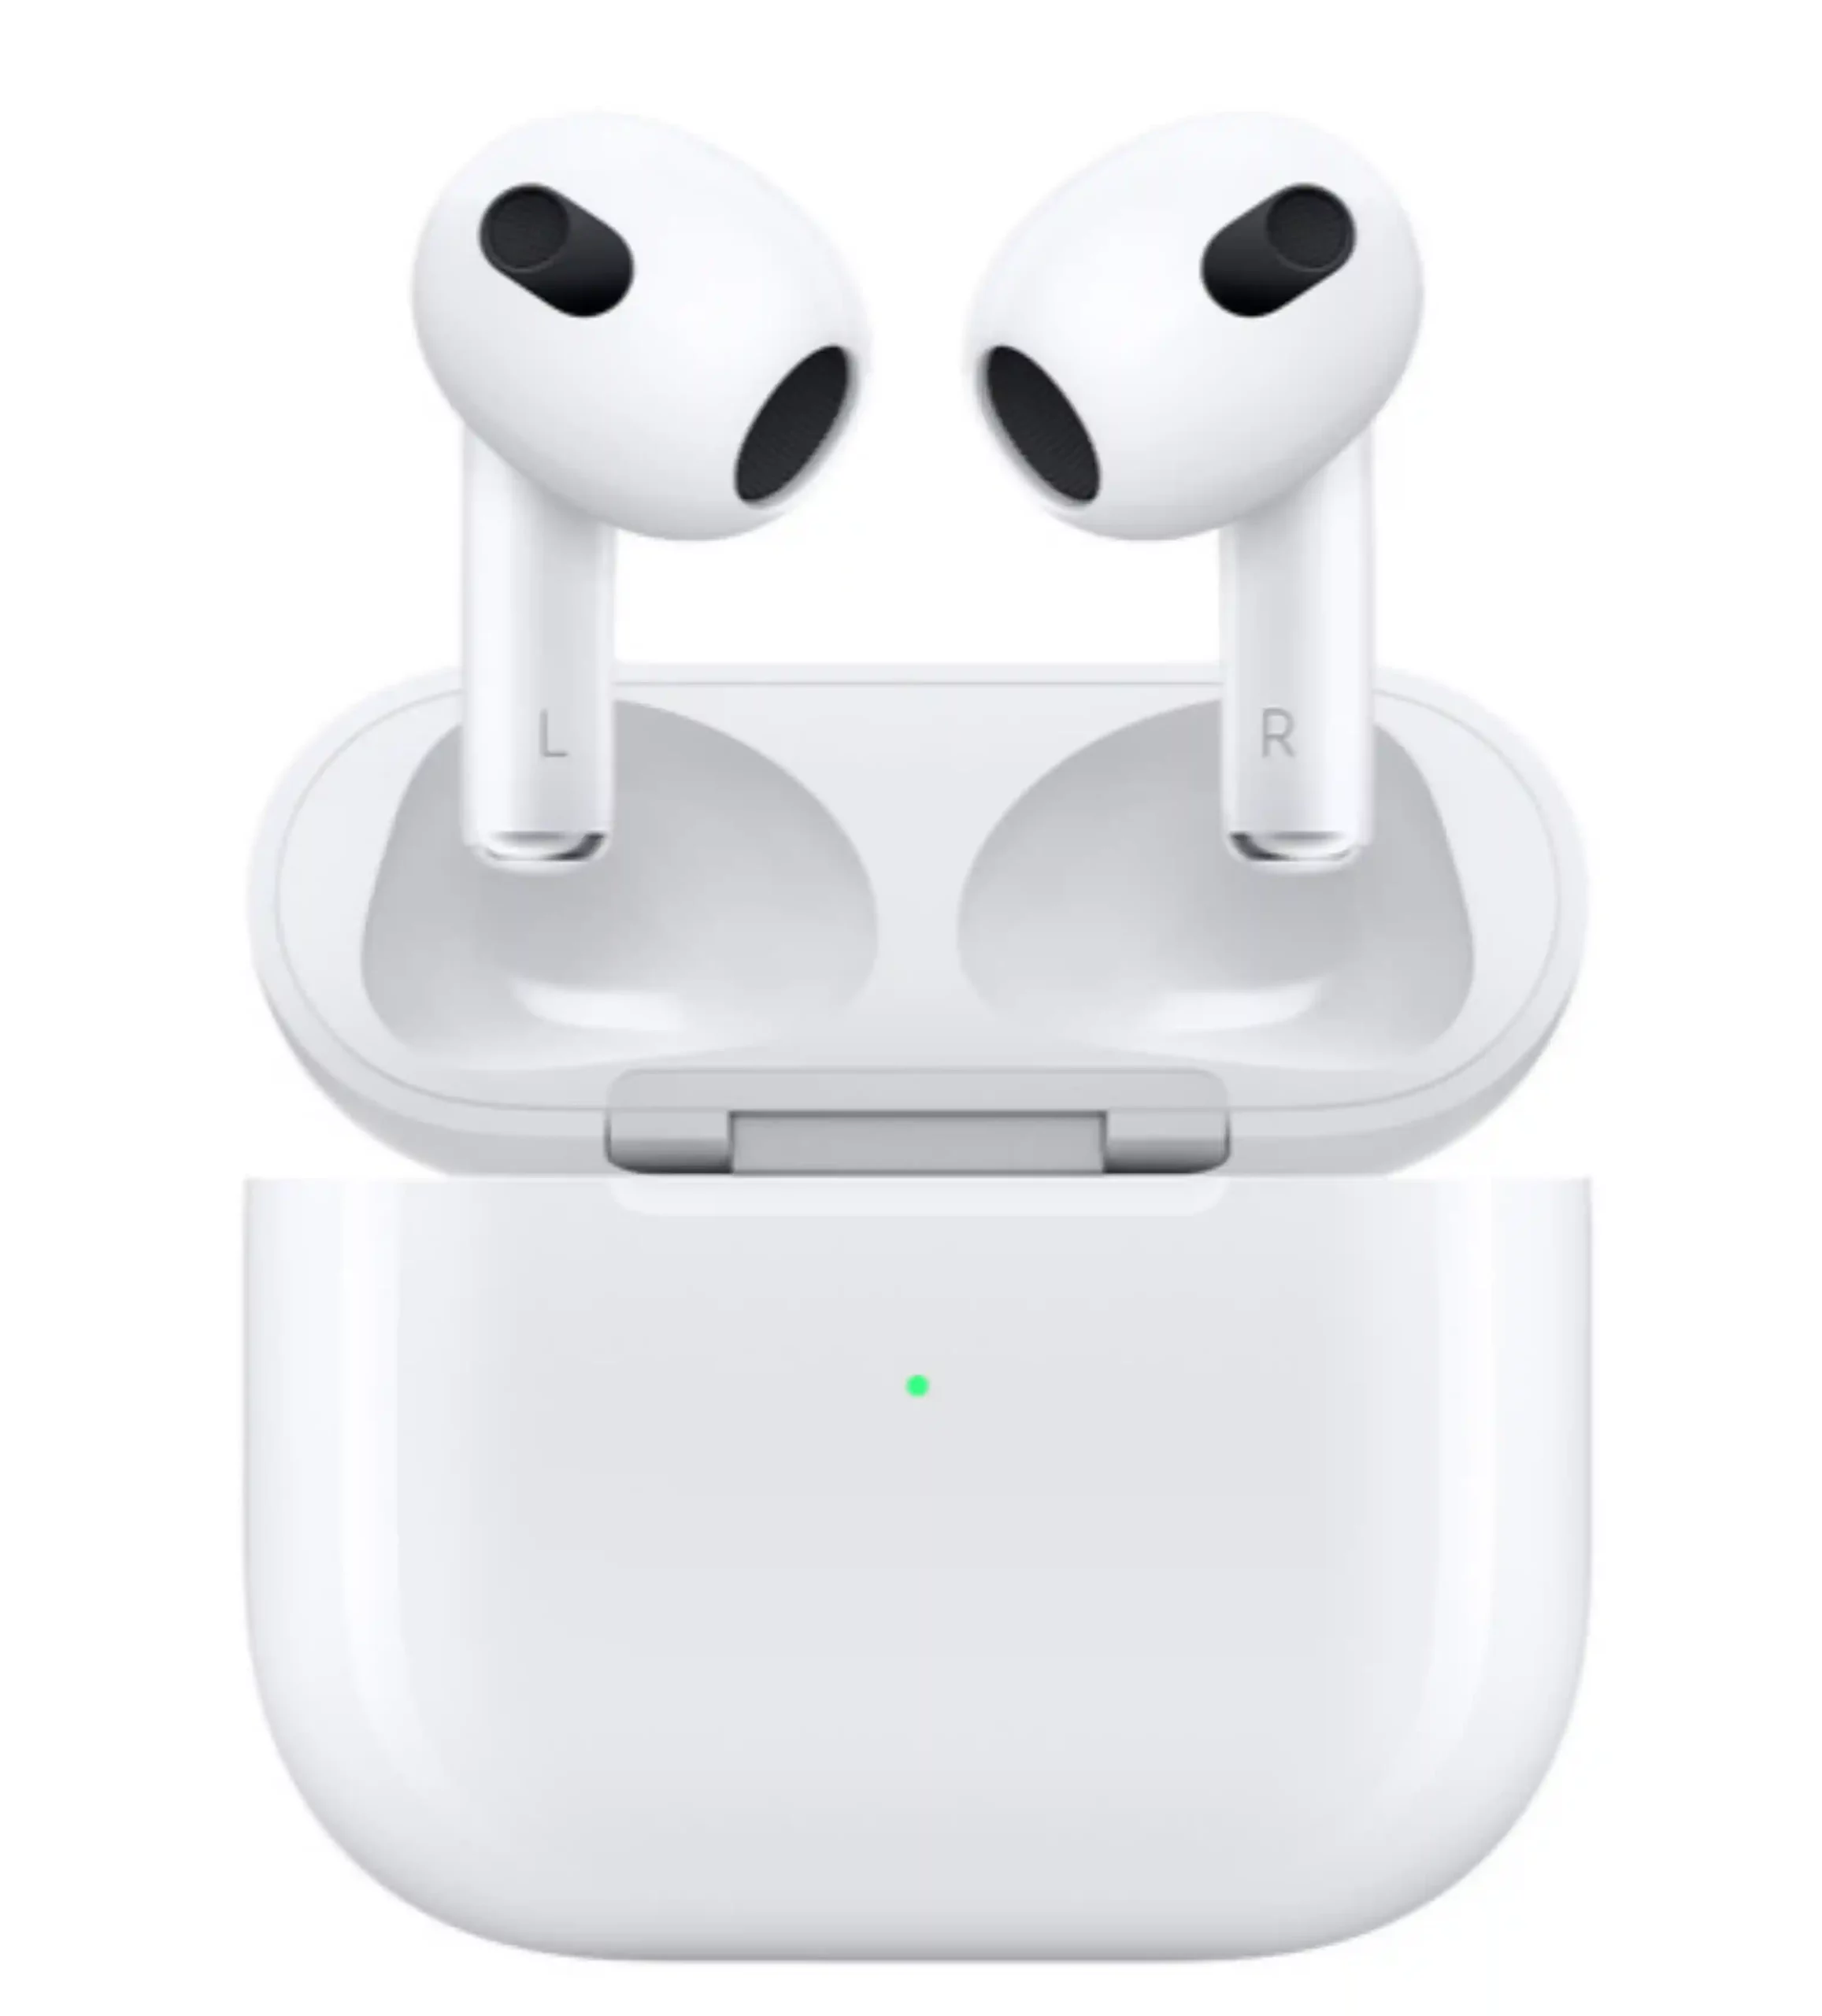 苹果 AirPods 3 真无线耳机在美国BJs Wholesale Club仅售134美元  直降35美元